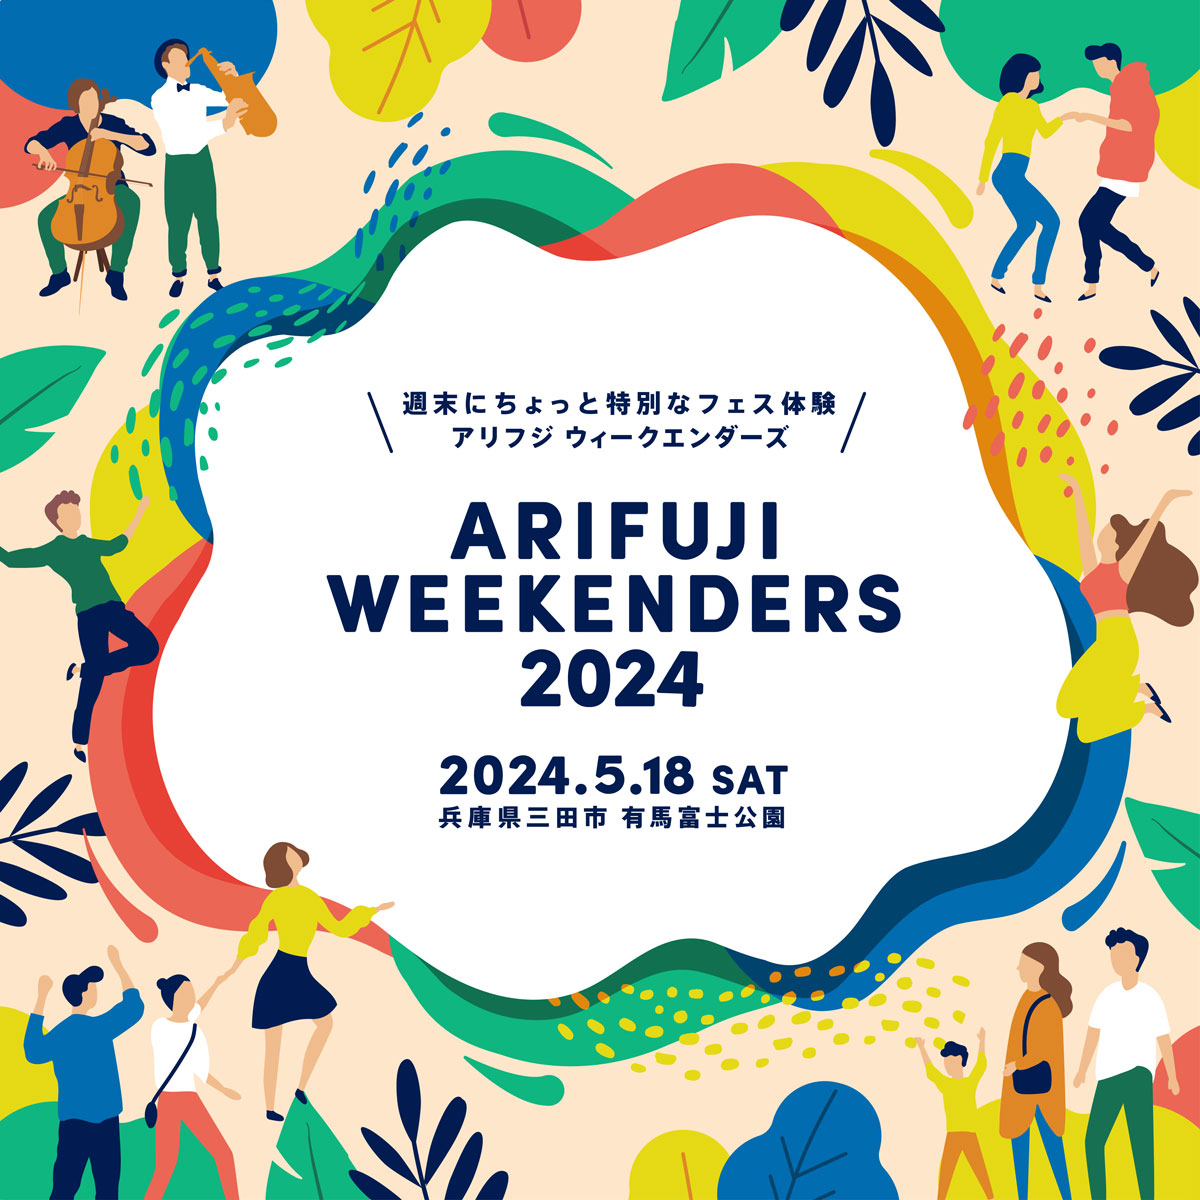 有馬富士公園で音楽フェス「ARIFUJI WEEKENDERS 2024」の開催が決定　三田市 [画像]